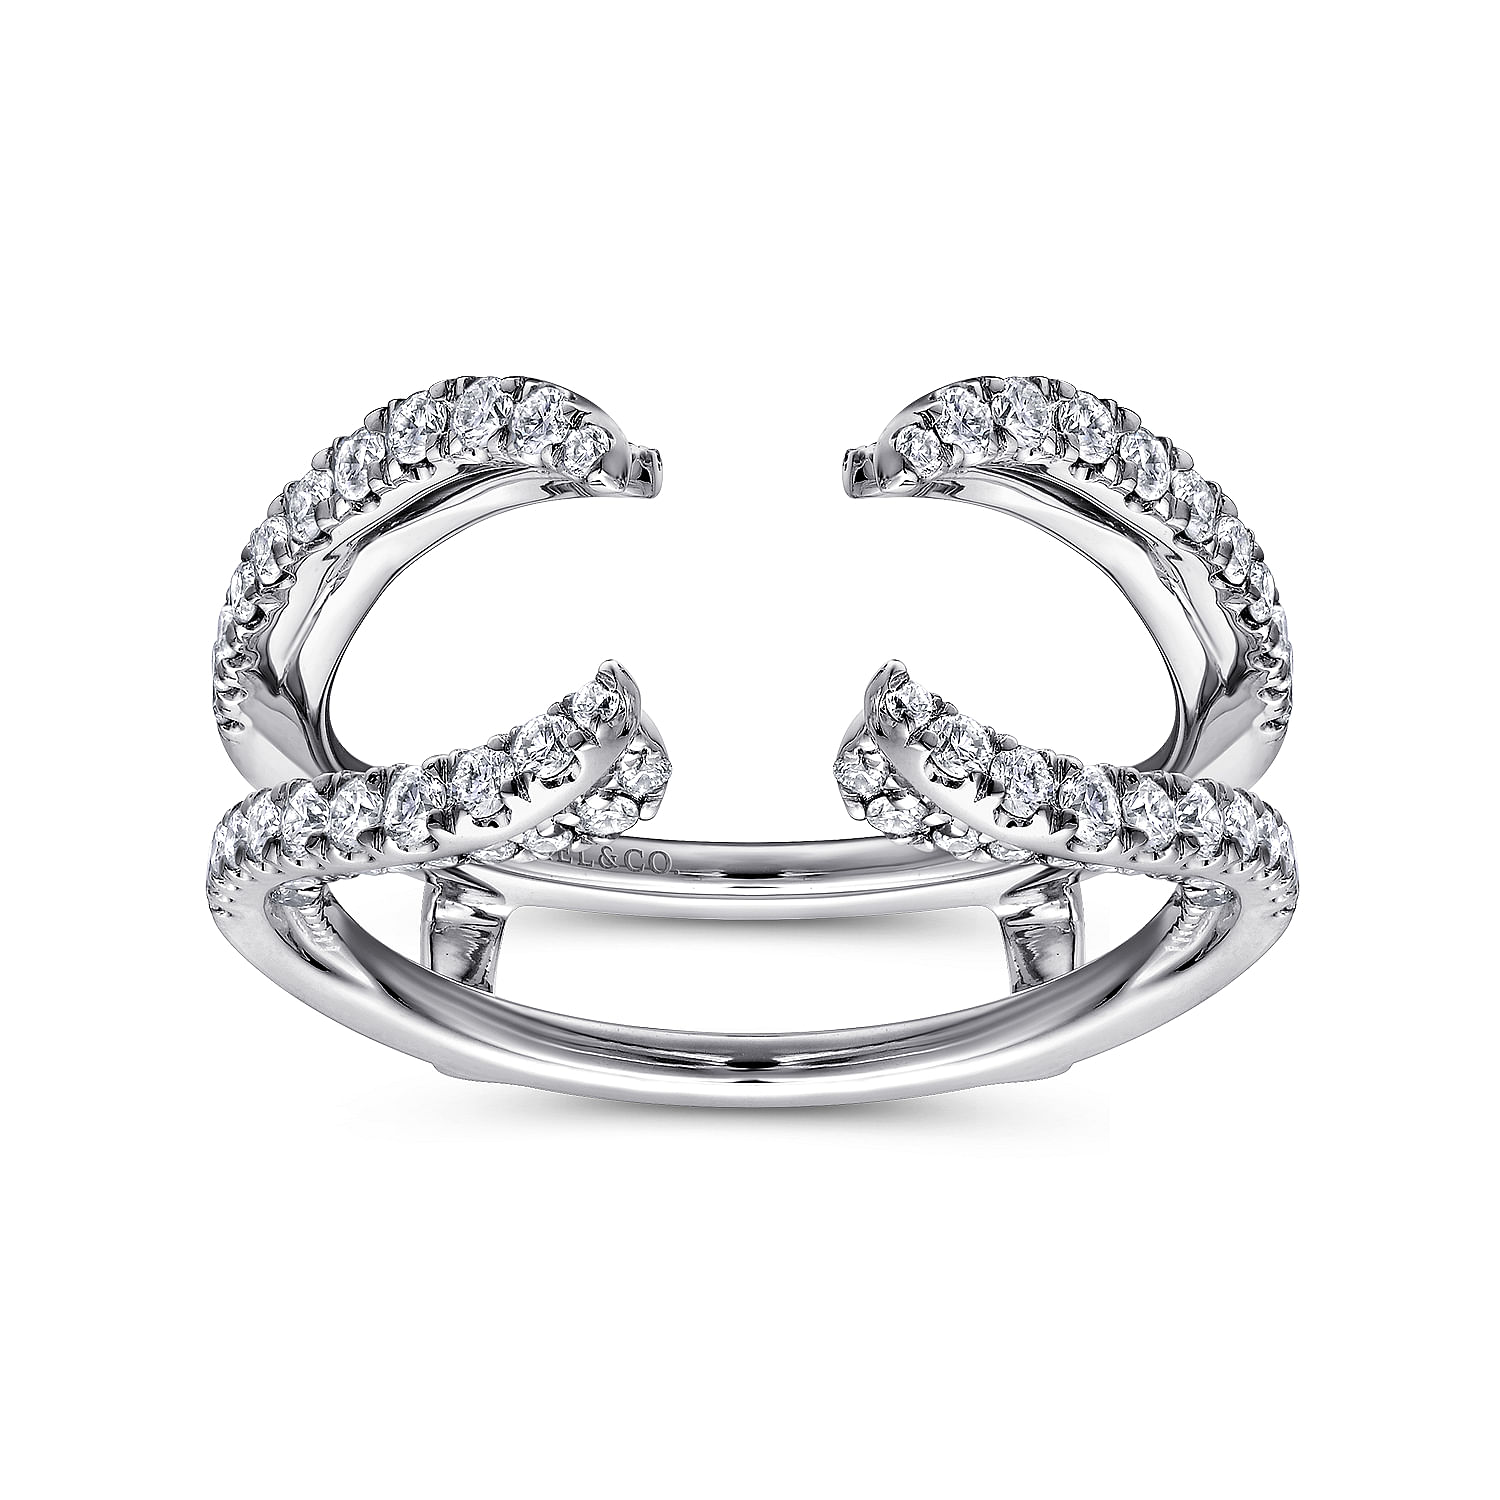 14K White Gold French Pavé Set Diamond Ring Enhancer